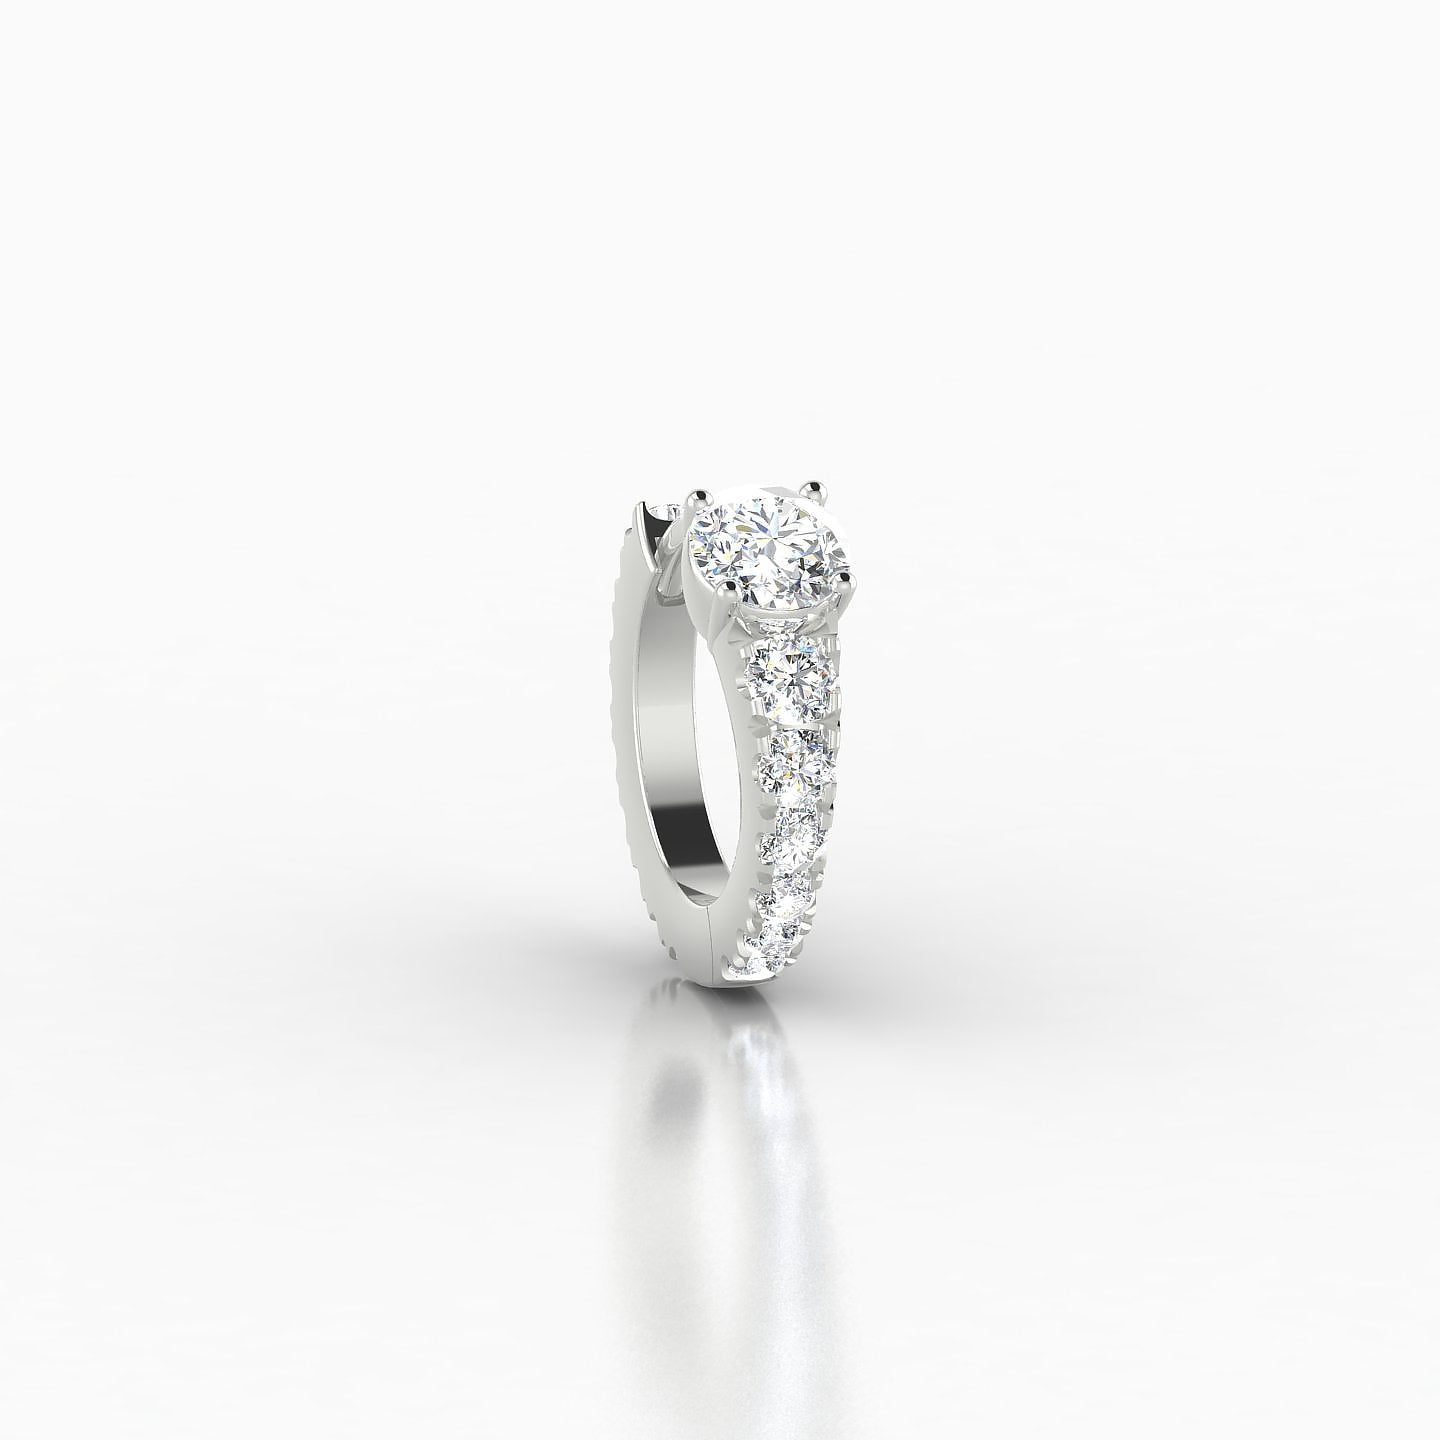 Sita | 18k White Gold 6.5 mm Round Diamond Nose Ring Piercing